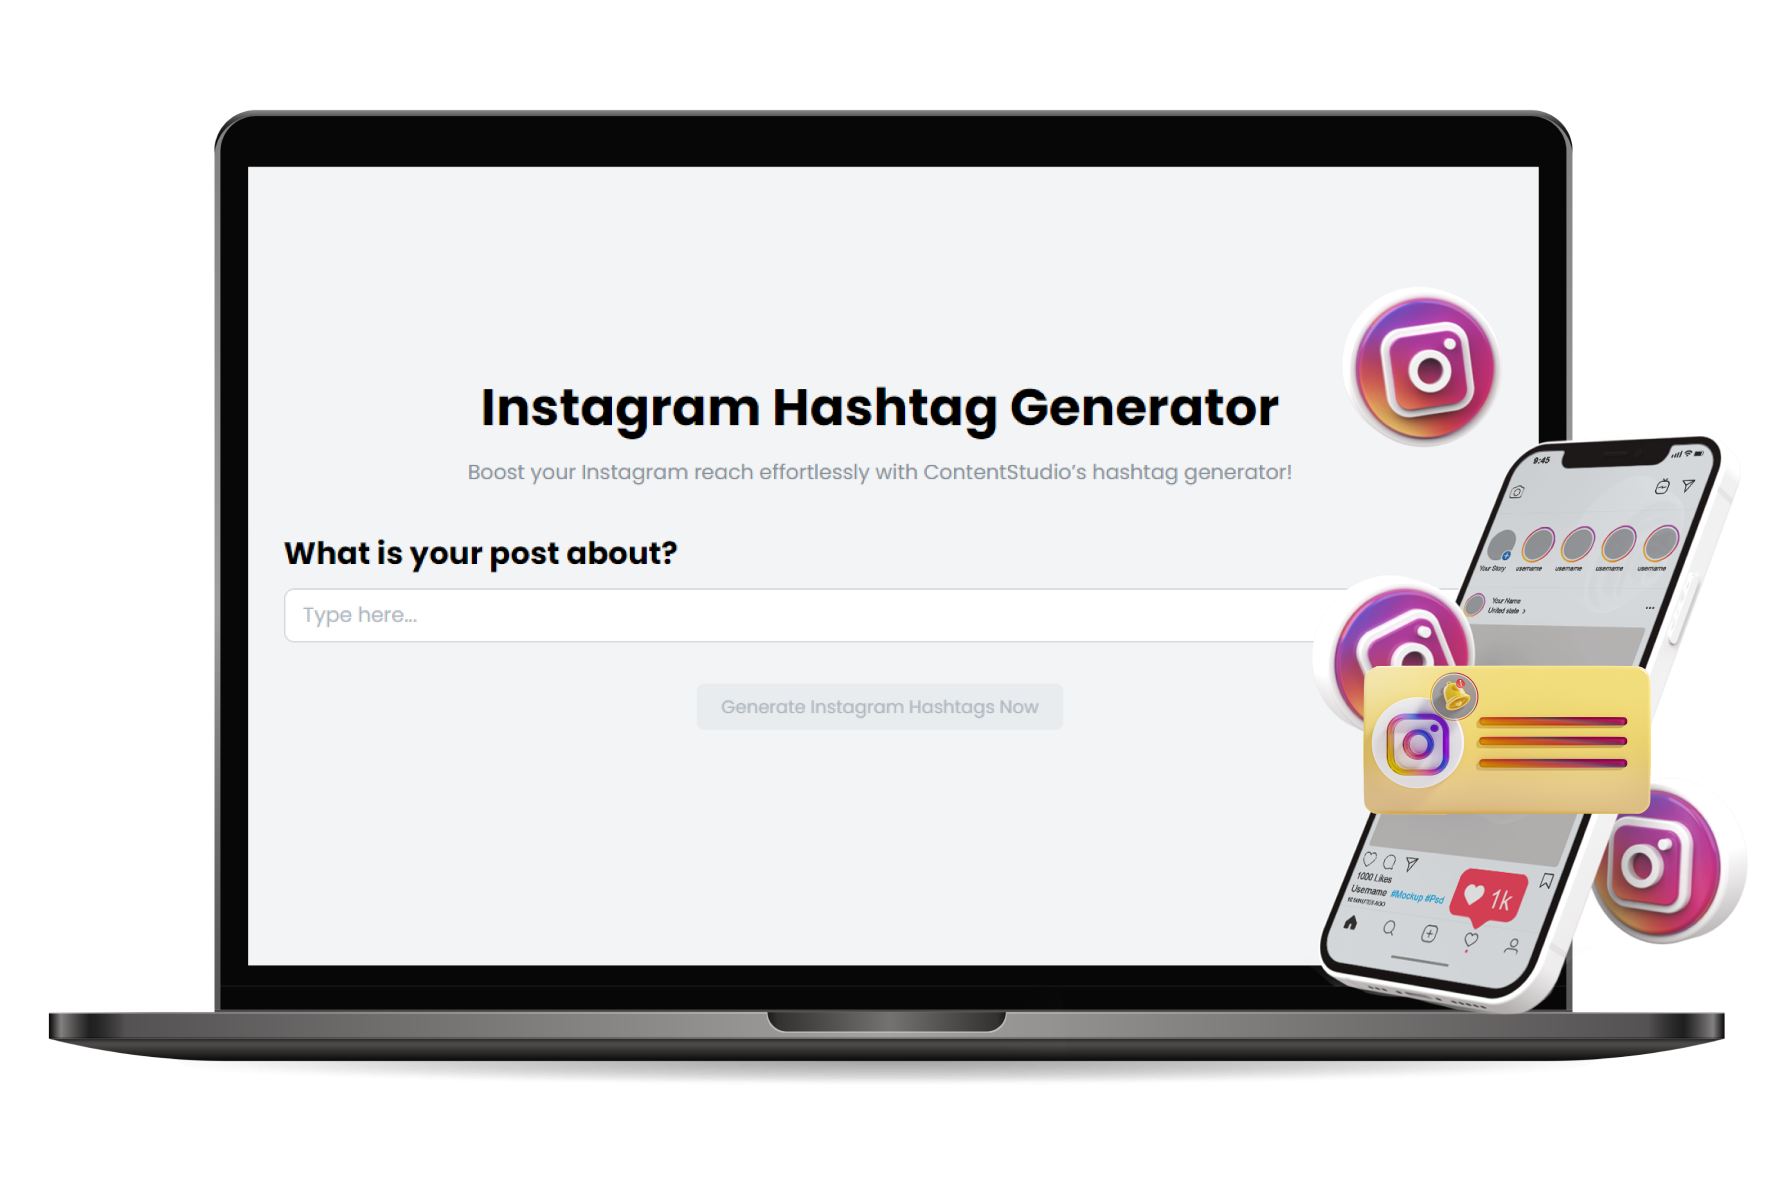 Instagram Hashtag Generator